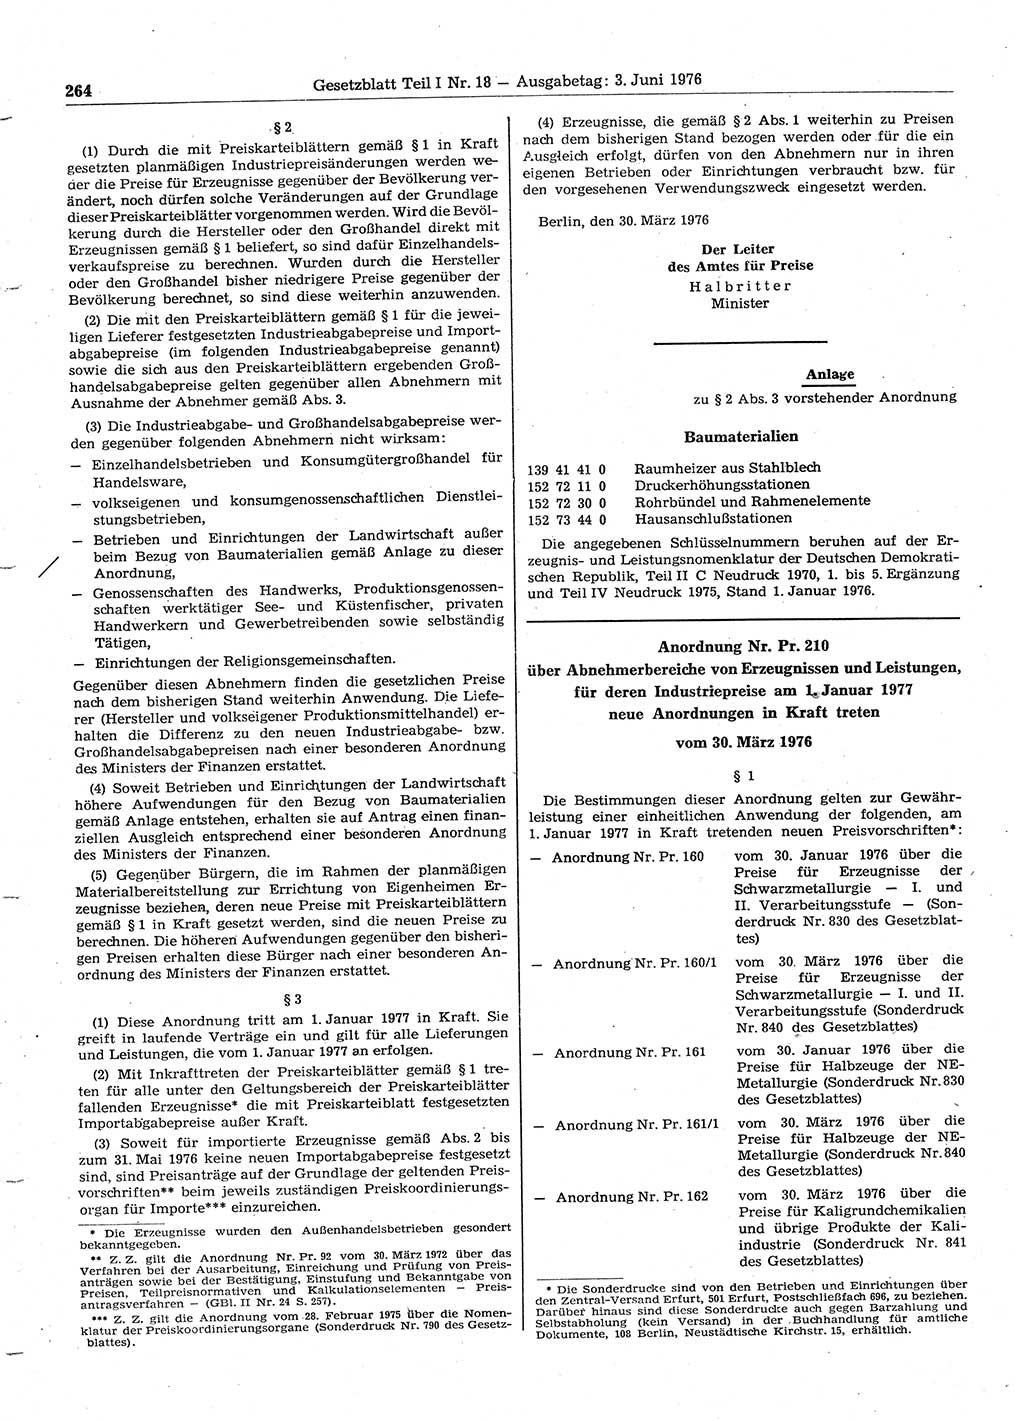 Gesetzblatt (GBl.) der Deutschen Demokratischen Republik (DDR) Teil Ⅰ 1976, Seite 264 (GBl. DDR Ⅰ 1976, S. 264)